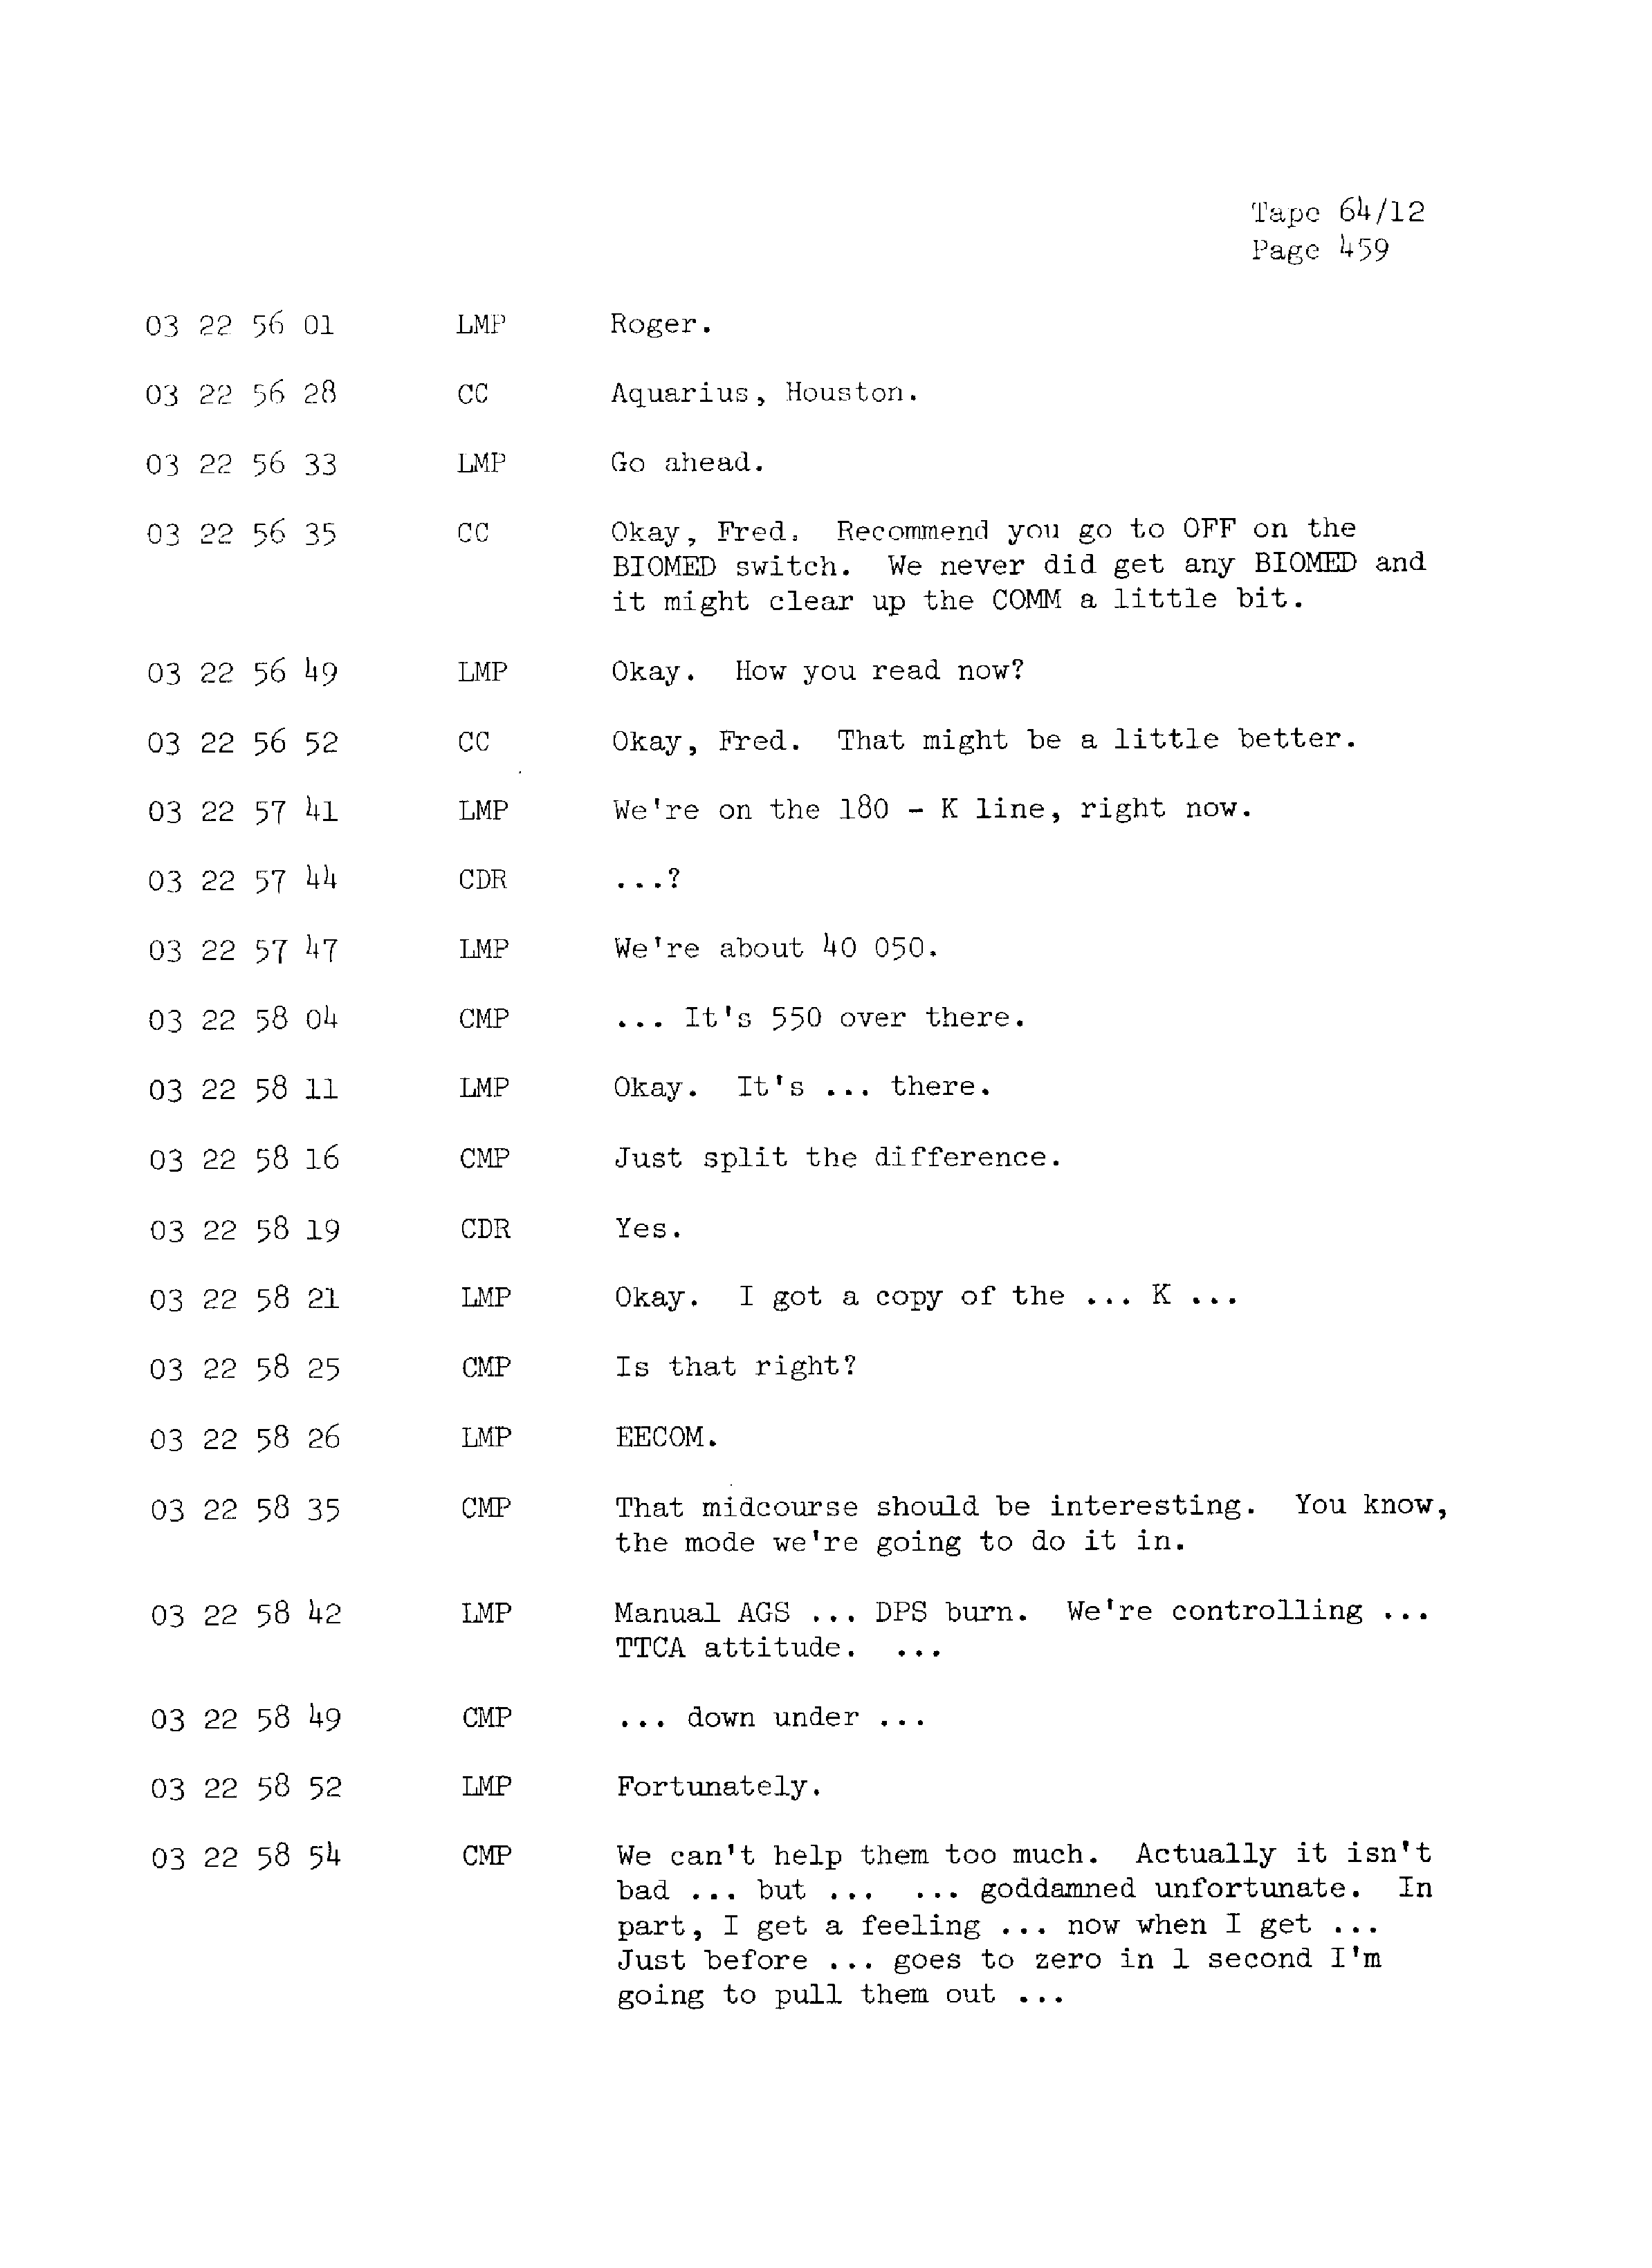 Page 466 of Apollo 13’s original transcript